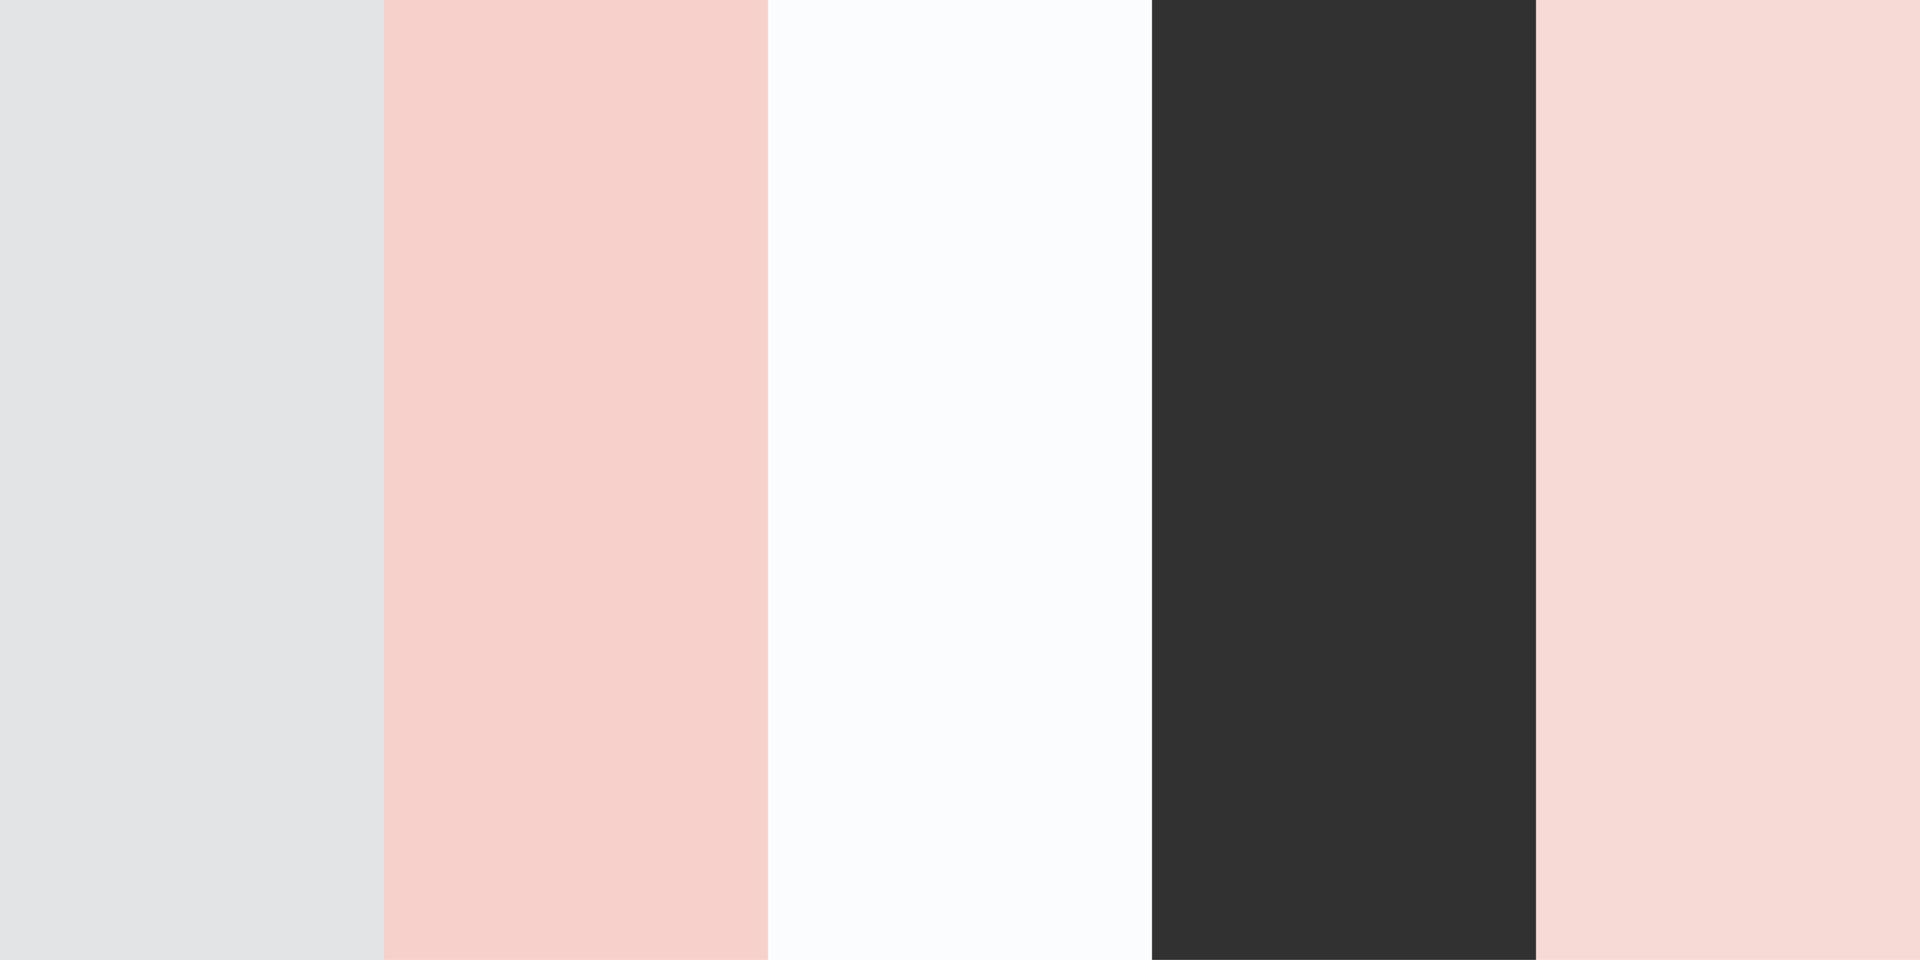 color schemes combinations palettes. Illustration CMYK colors for print. Vector color palette